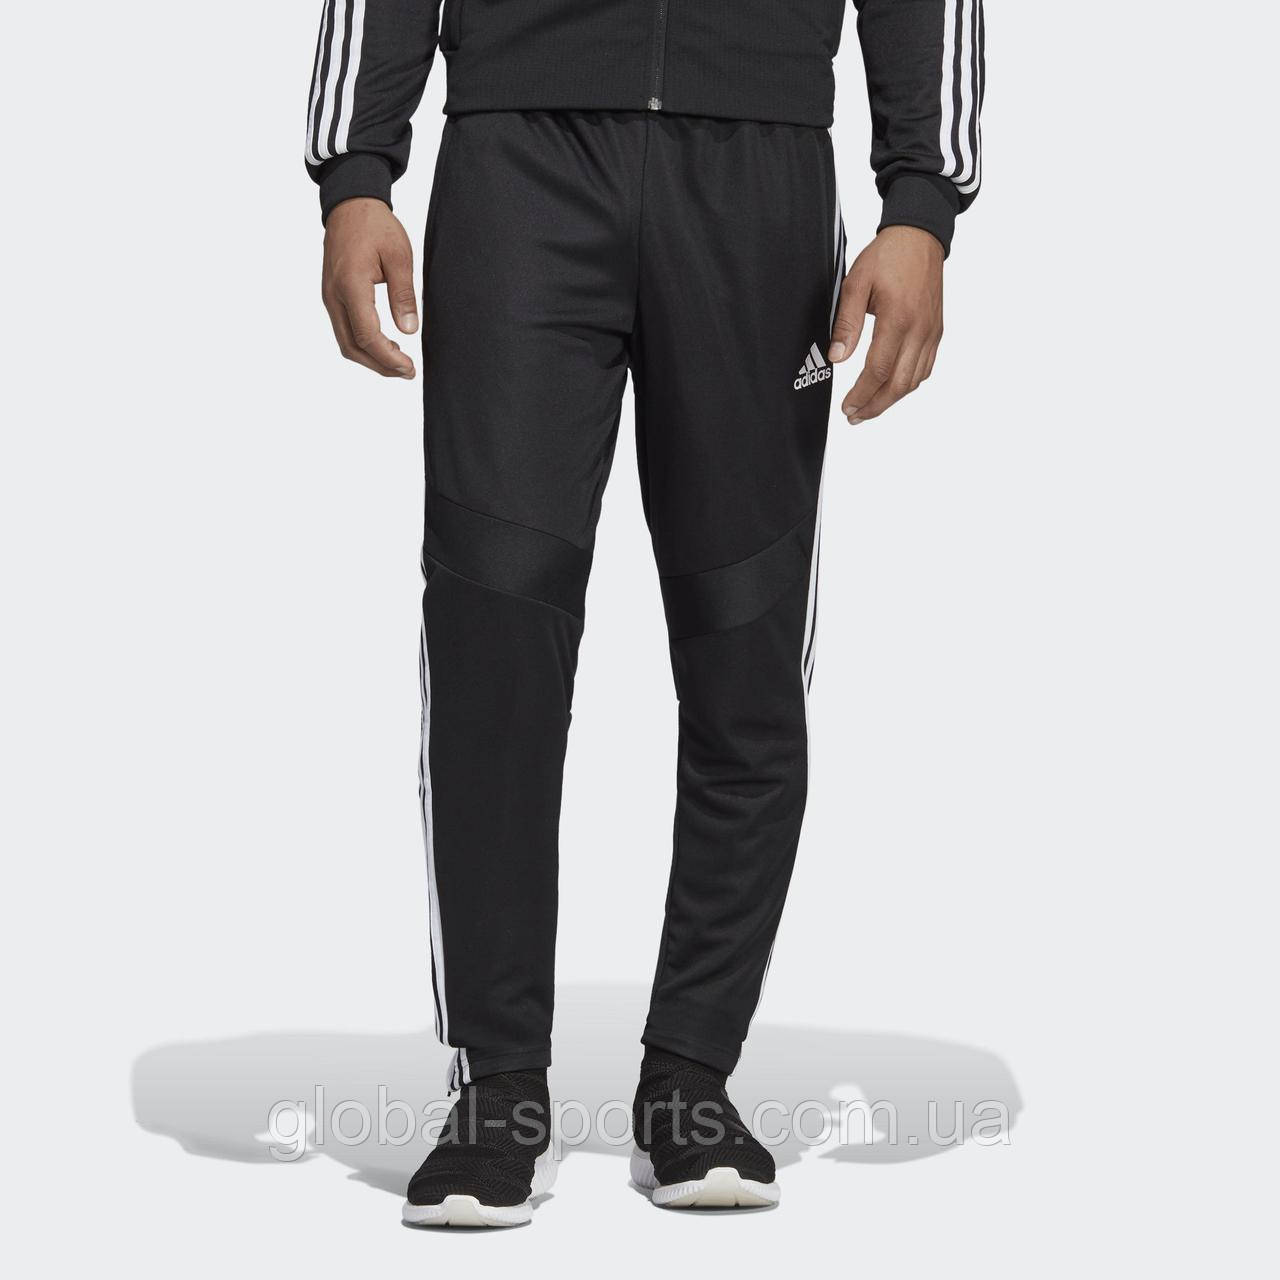 Чоловічі штани Adidas Tiro 19 (Артикул: D95958) XS - S